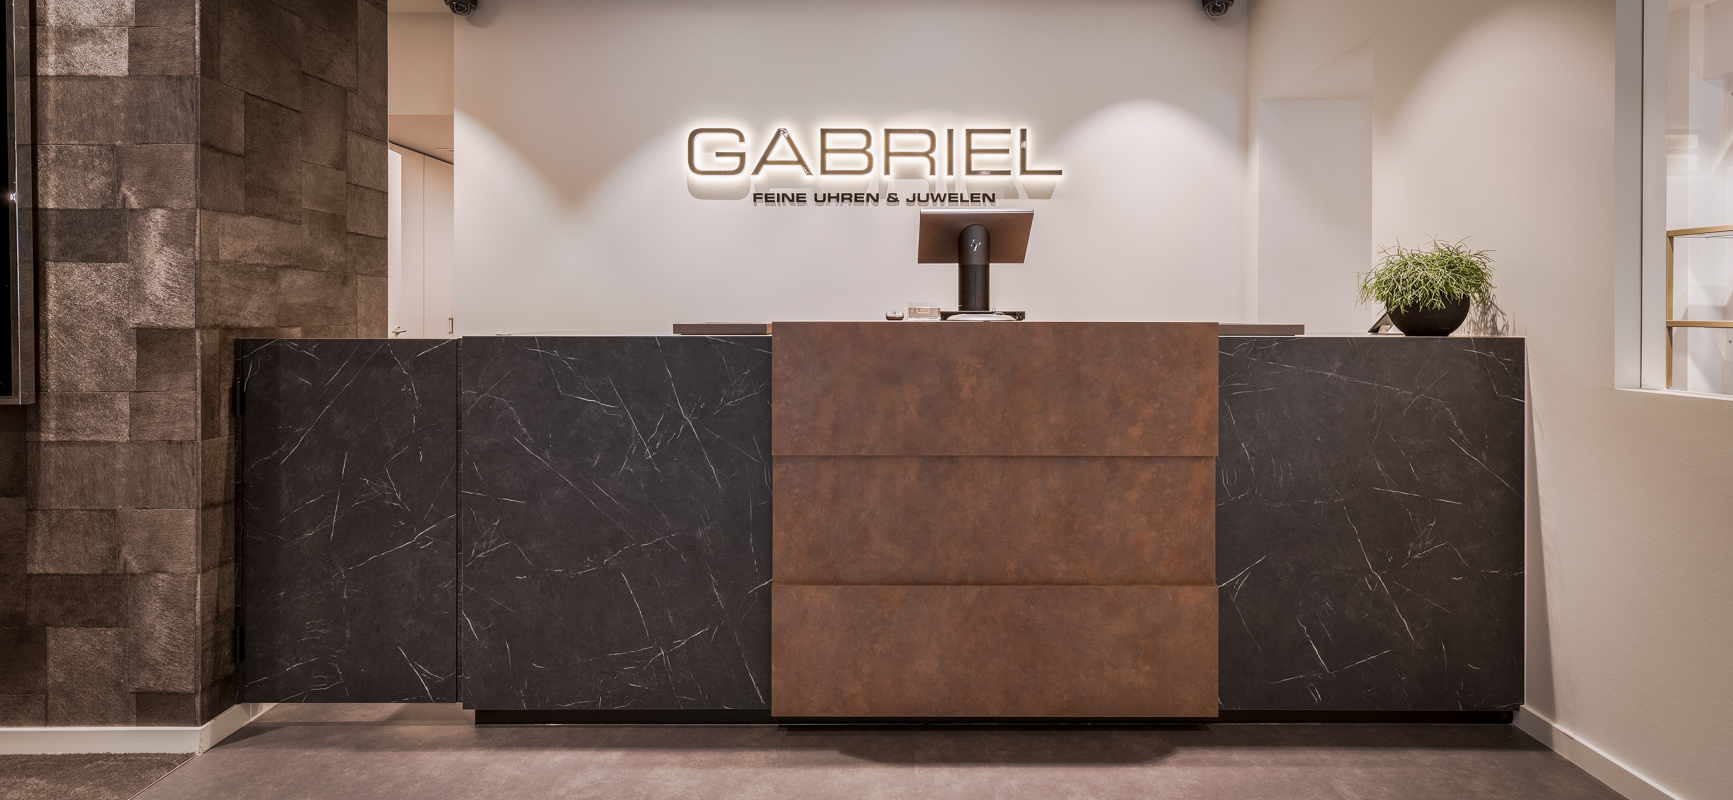 Gabriel – Feine Uhren & Juwelen | Cologne (DE) - 